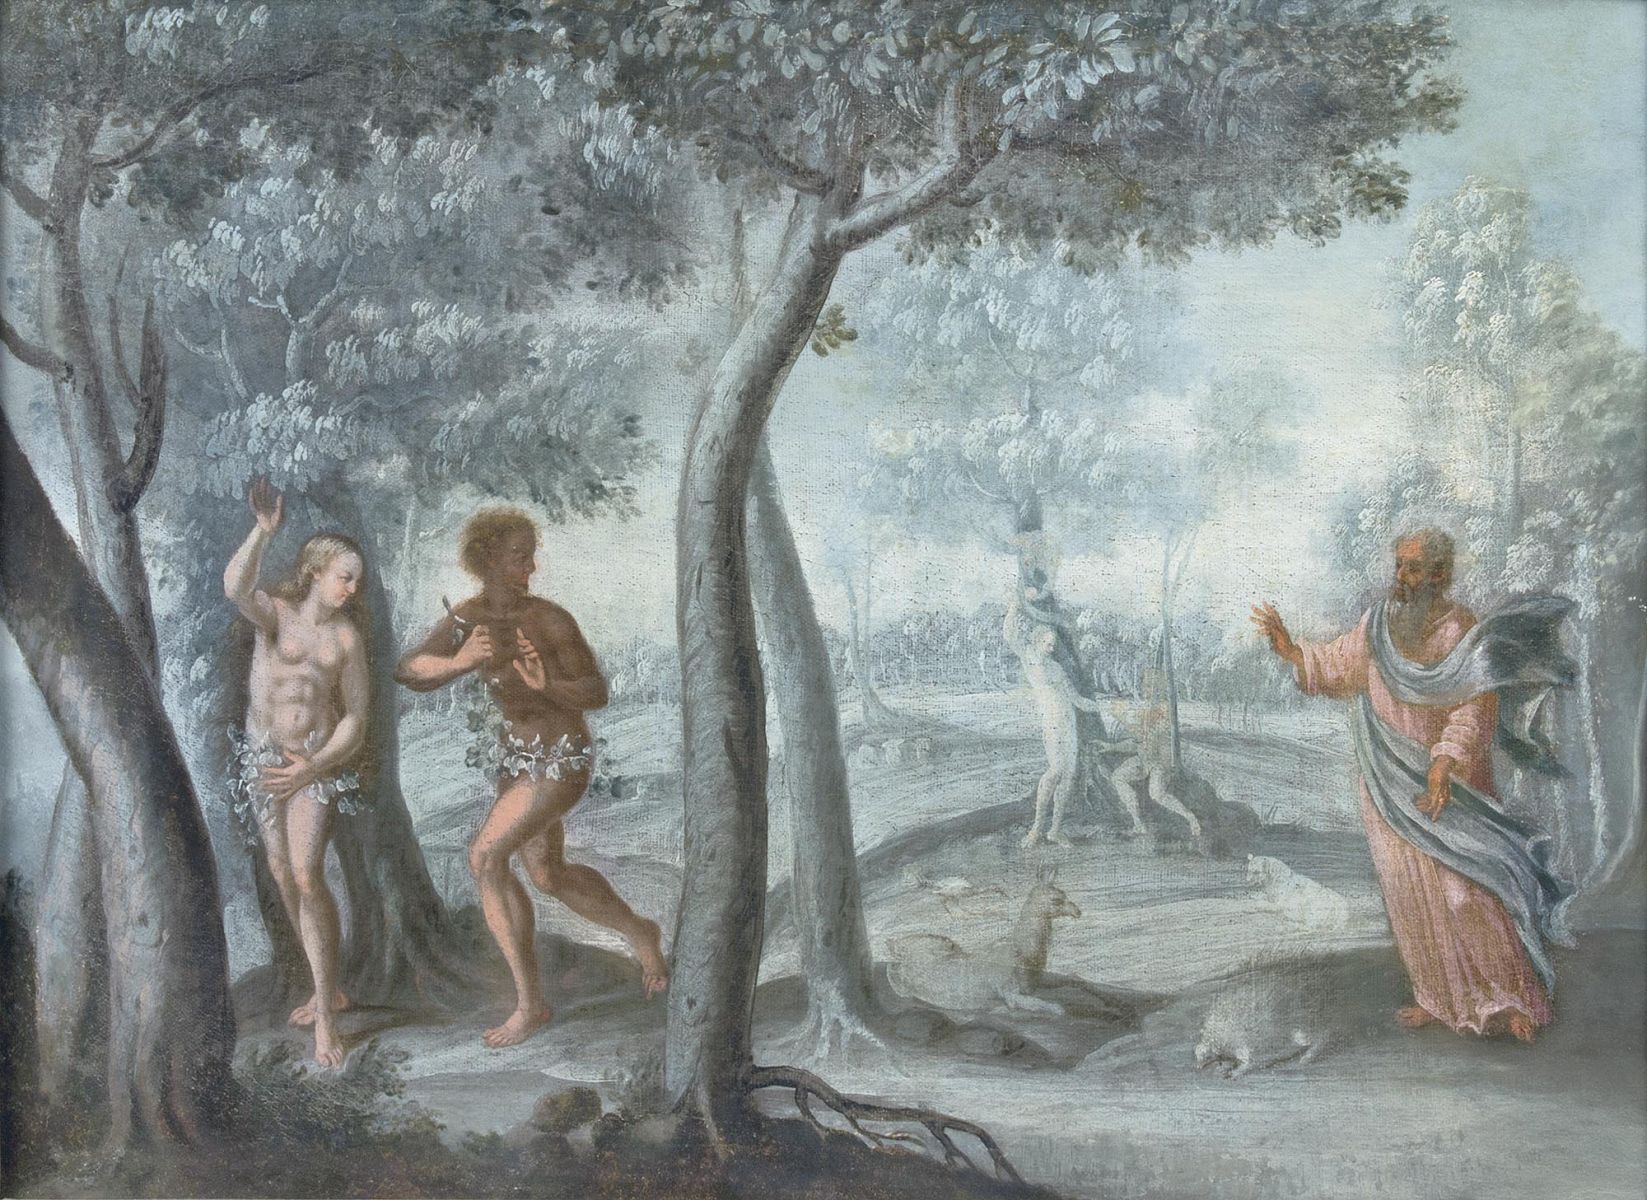 Seltene Folge von 4 Gemälden: Die Geschichte der ersten Menschen - Bild 2